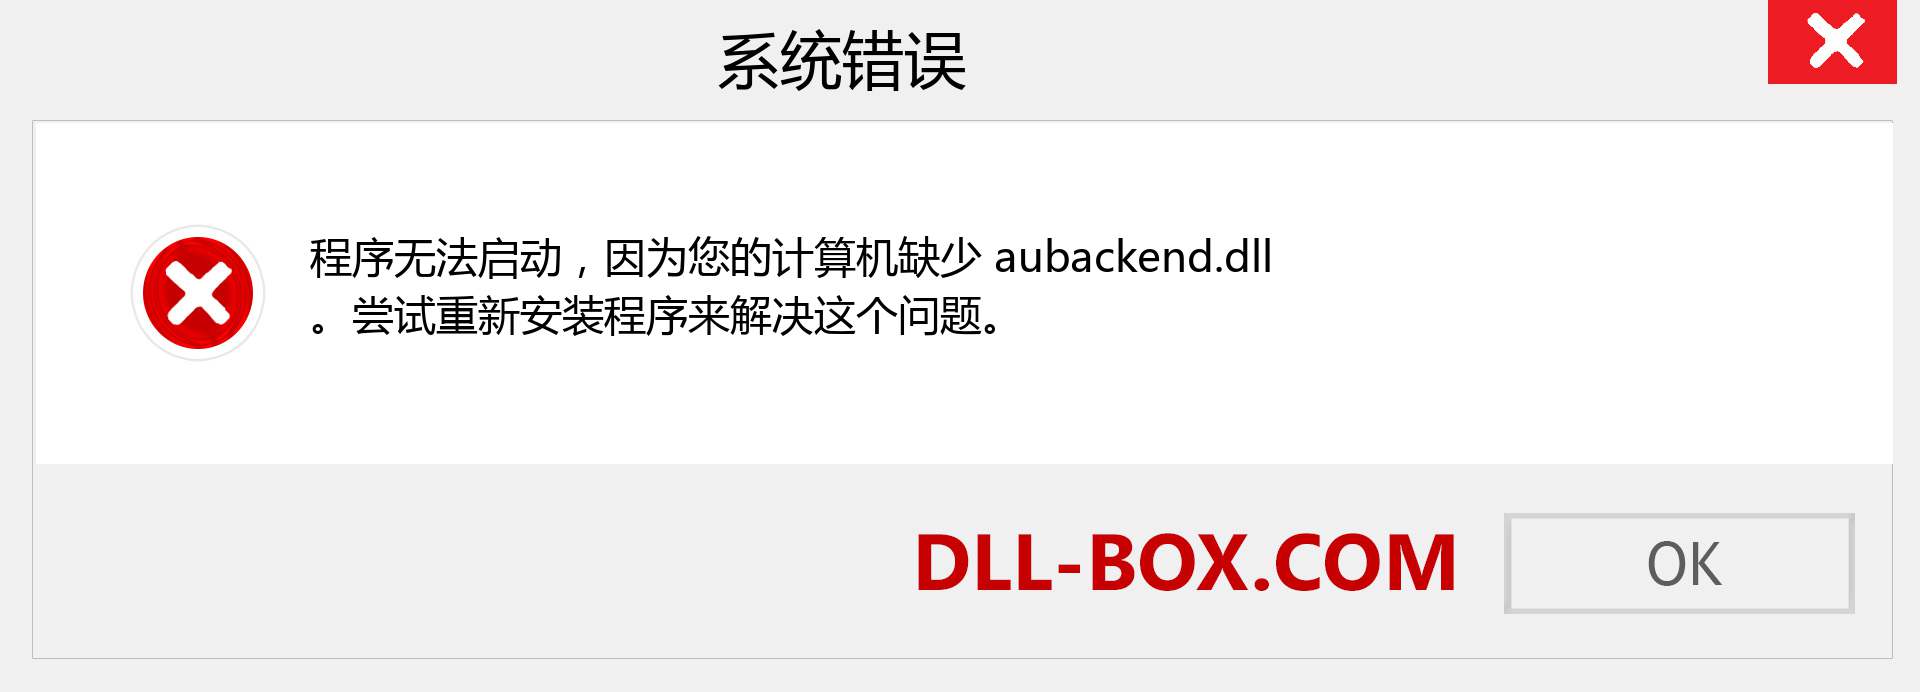 aubackend.dll 文件丢失？。 适用于 Windows 7、8、10 的下载 - 修复 Windows、照片、图像上的 aubackend dll 丢失错误